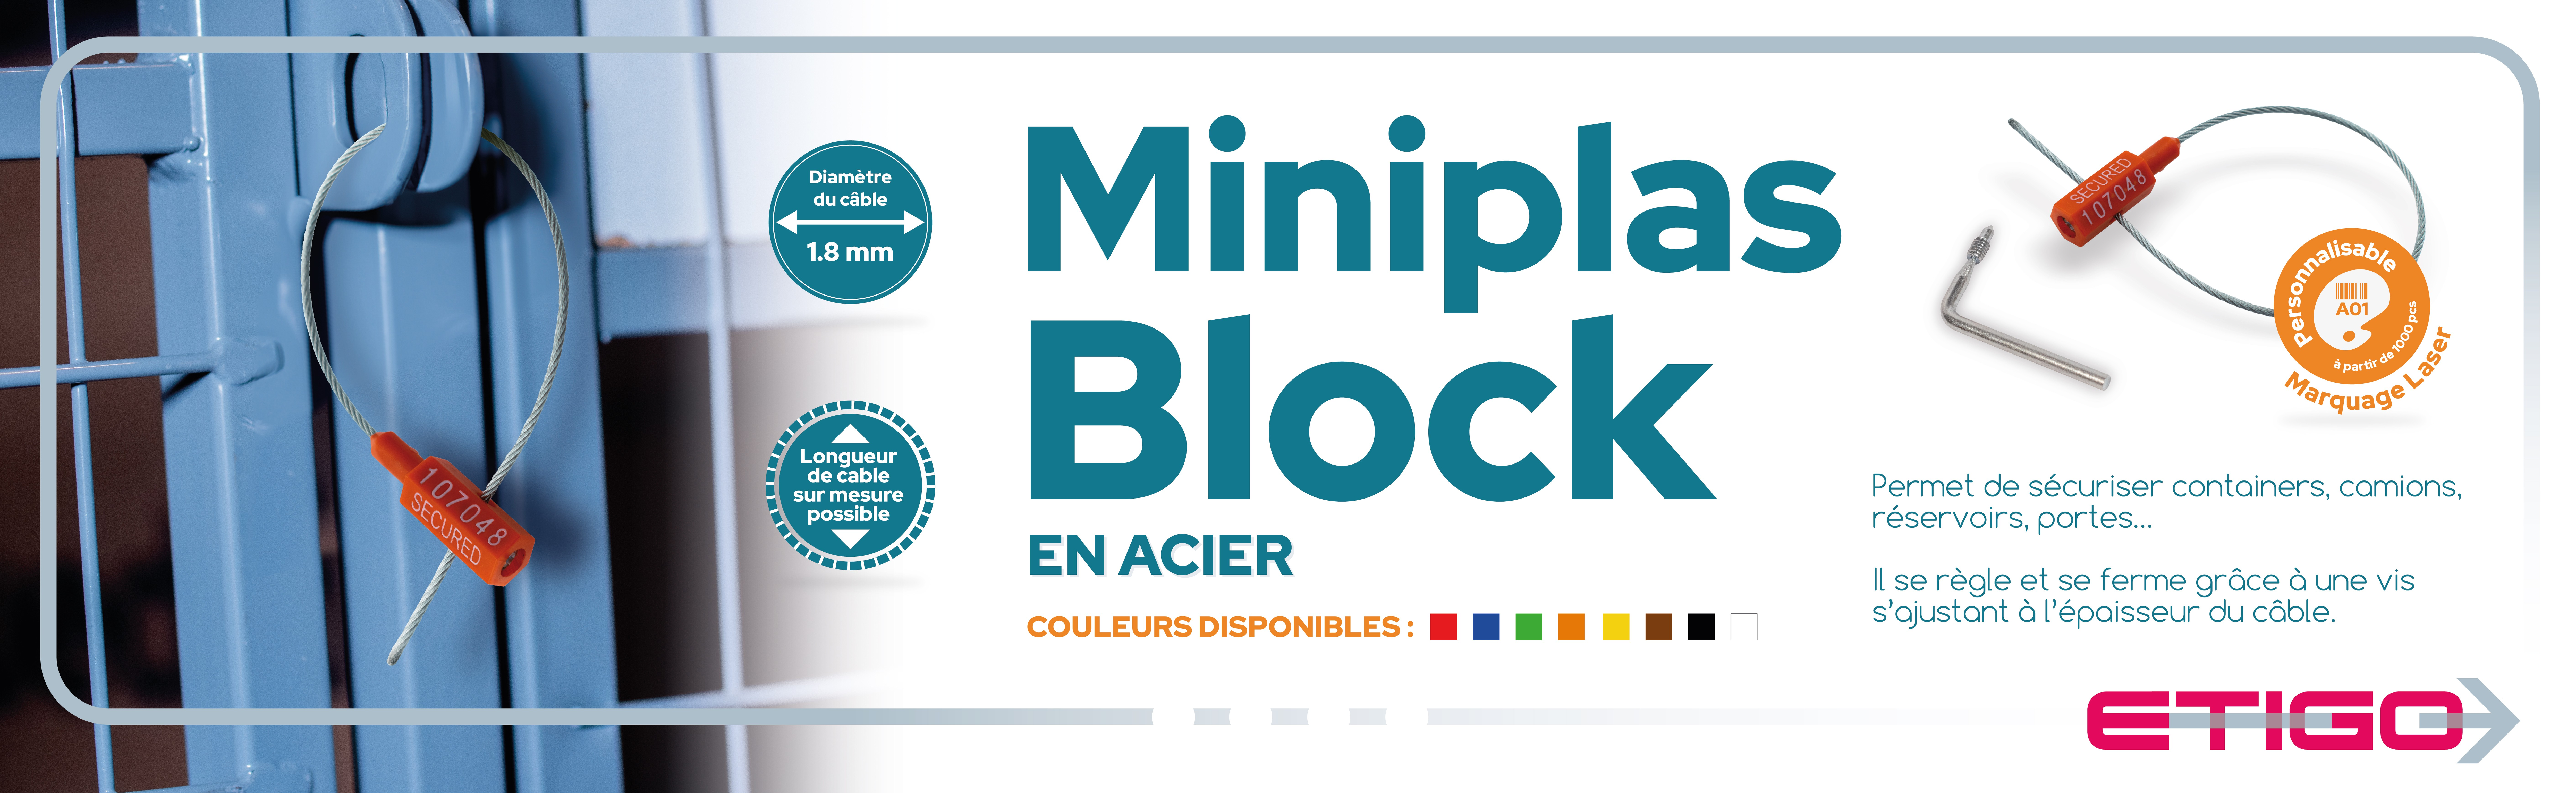 Miniplas block